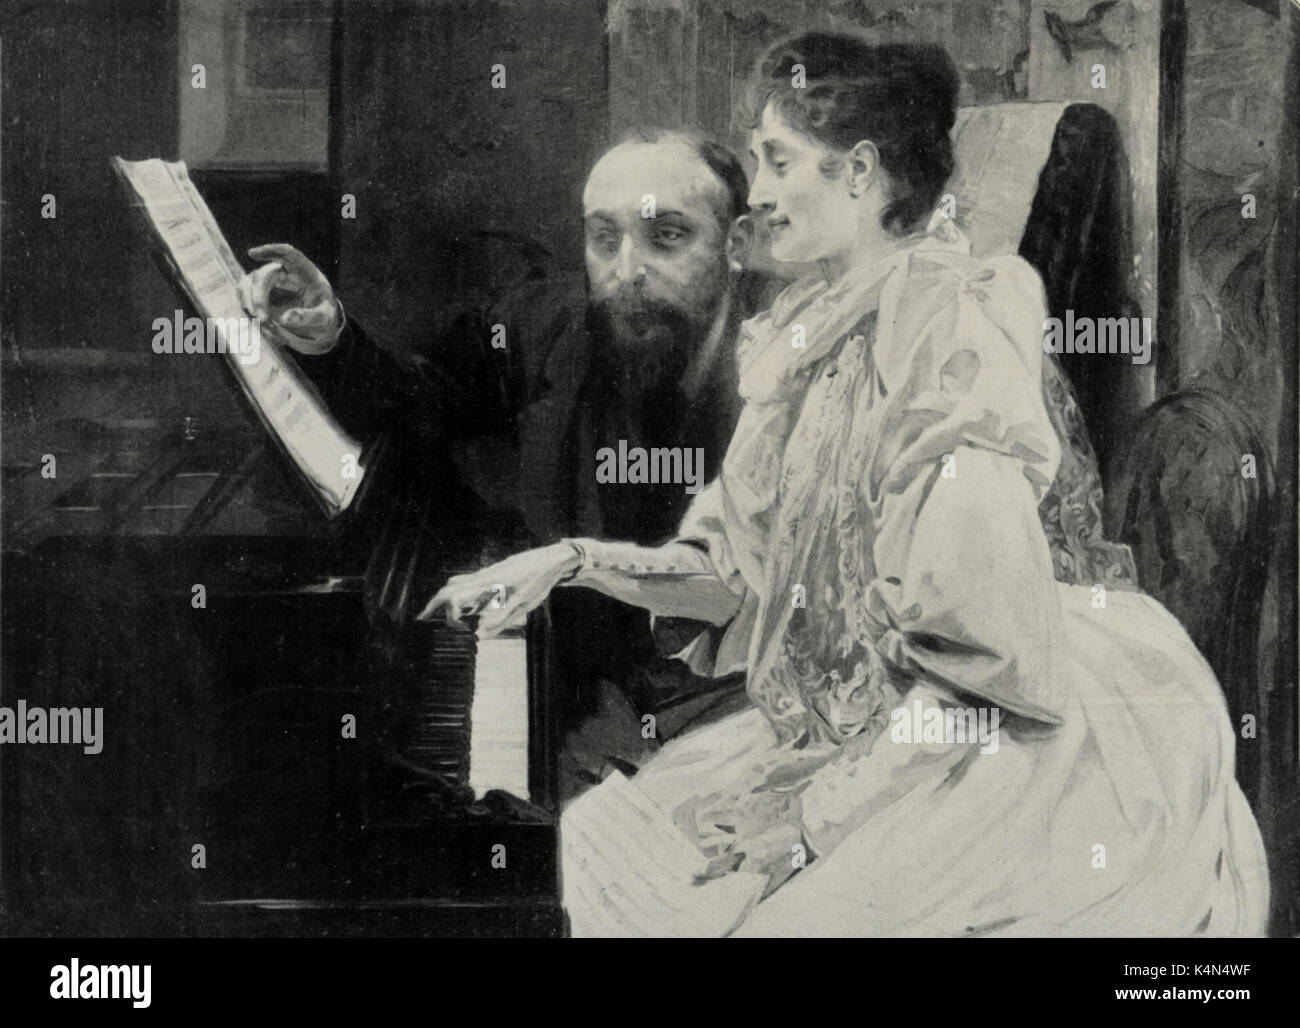 CHAUSSON, Ernest mit Madame Chausson Klavier spielen. Der französische Komponist, 1855 - 1899. Gemälde von Albert Besnard Stockfoto